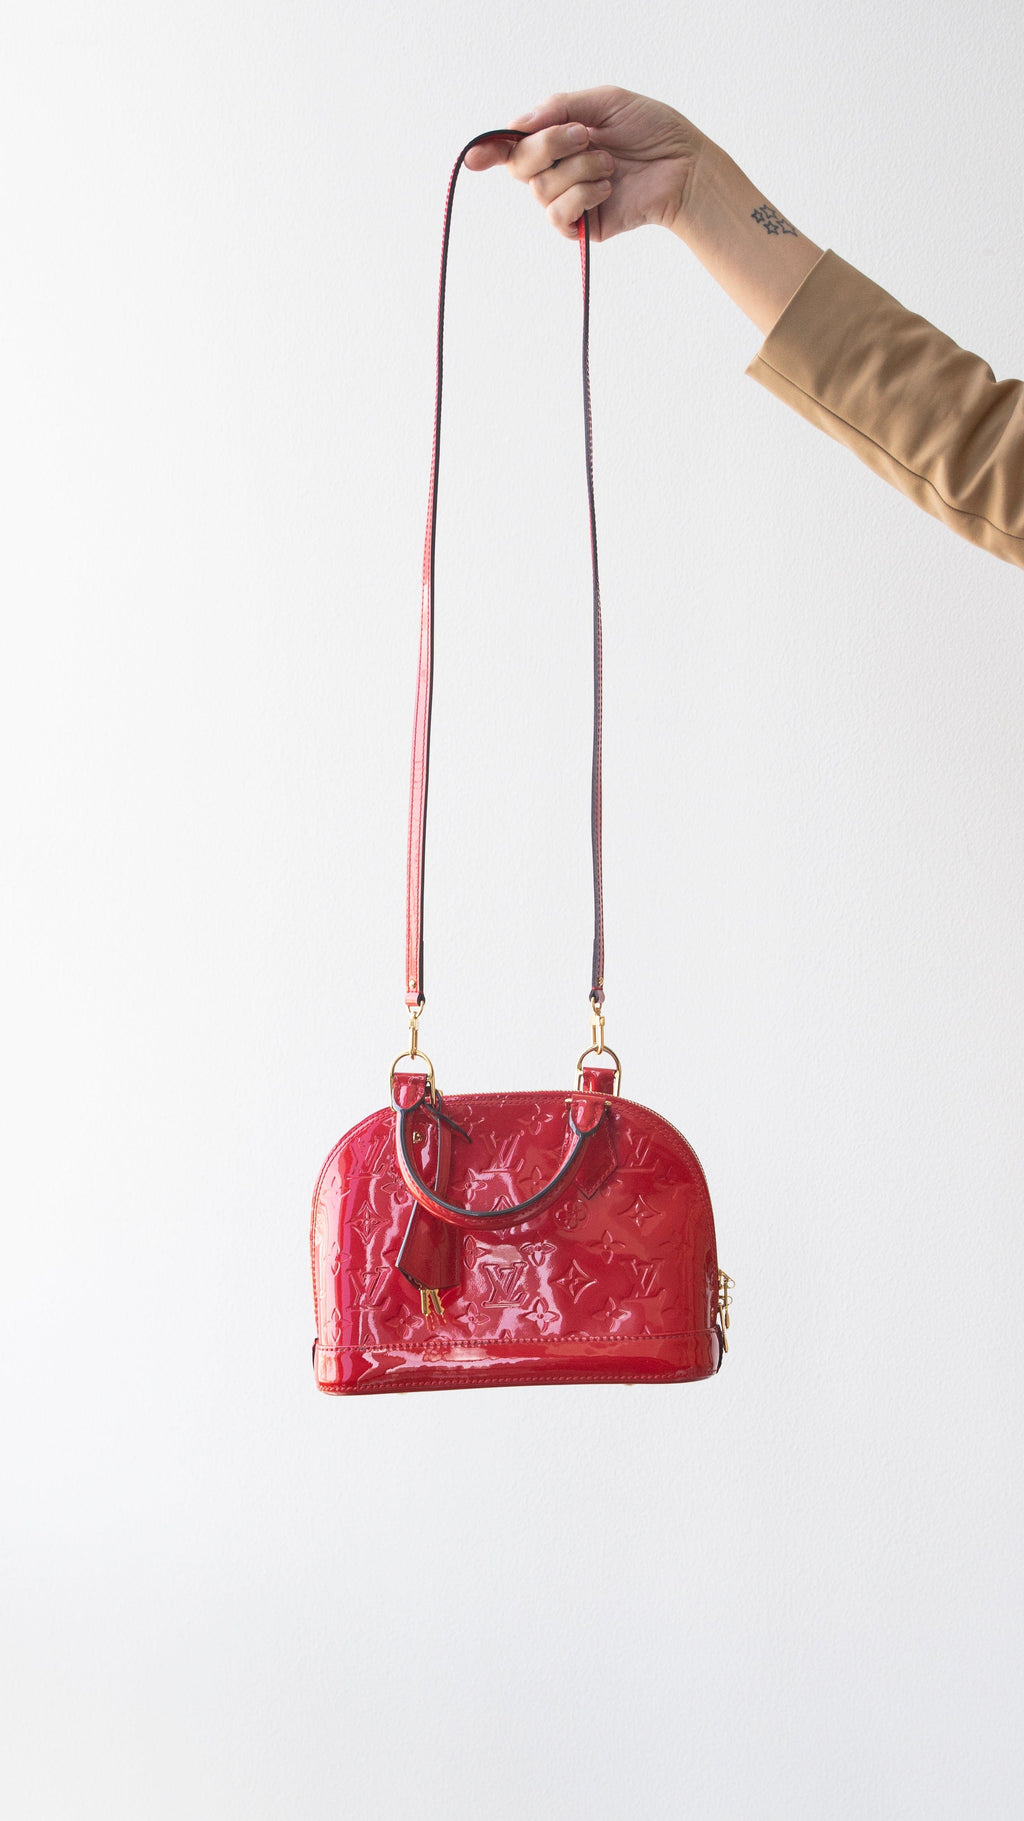 LOUIS VUITTON Handbag M93596 Alma GM Monogram Vernis Red Red Women Use –